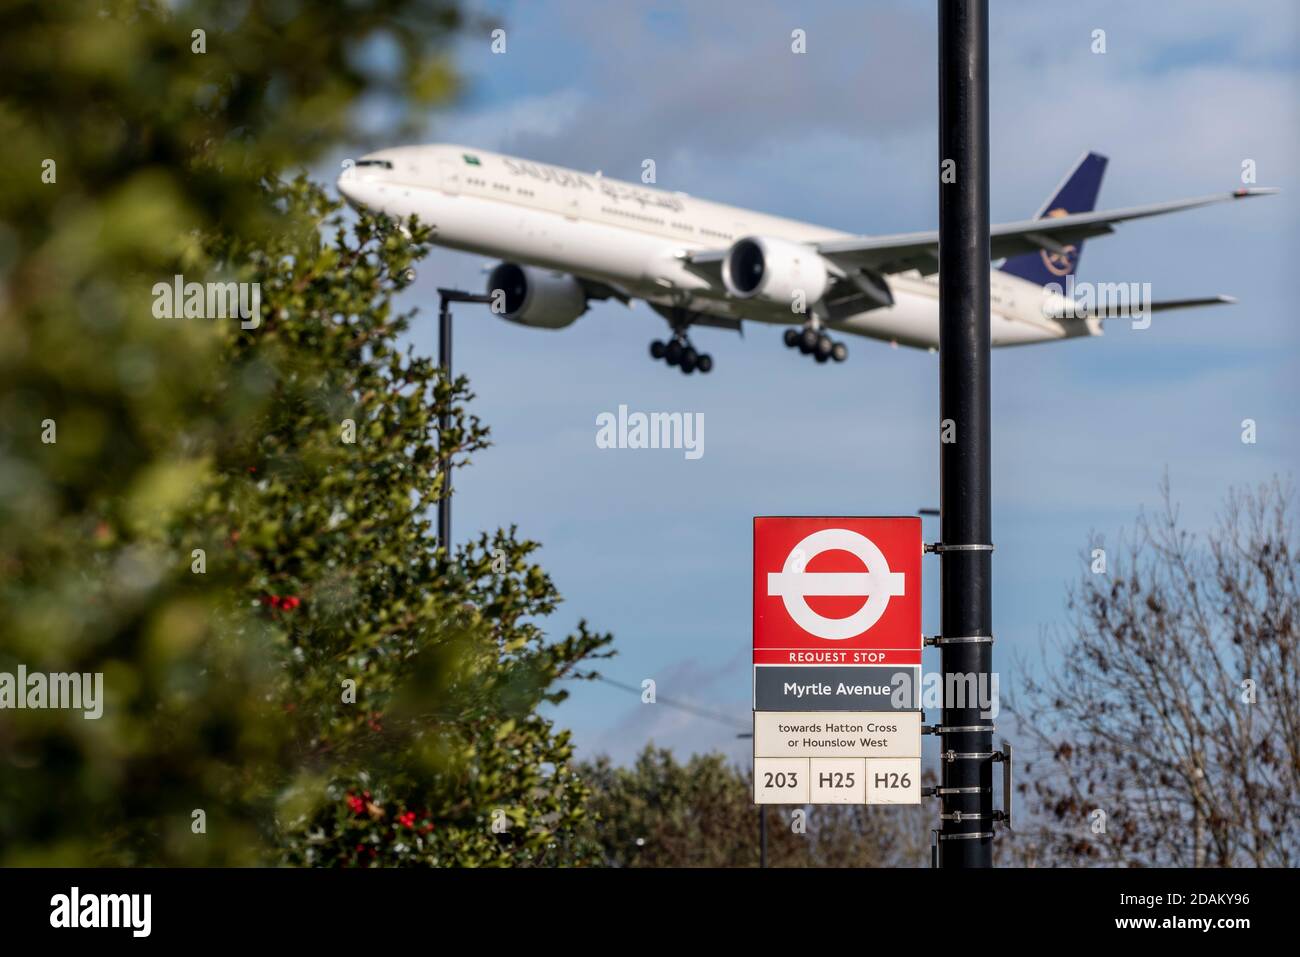 Avión jet airliner en aproximación a la tierra en el Aeropuerto Heathrow de Londres, Reino Unido, sobre la señal de parada de autobús de la avenida Myrtle. Transporte de Londres. Transporte a Londres Foto de stock